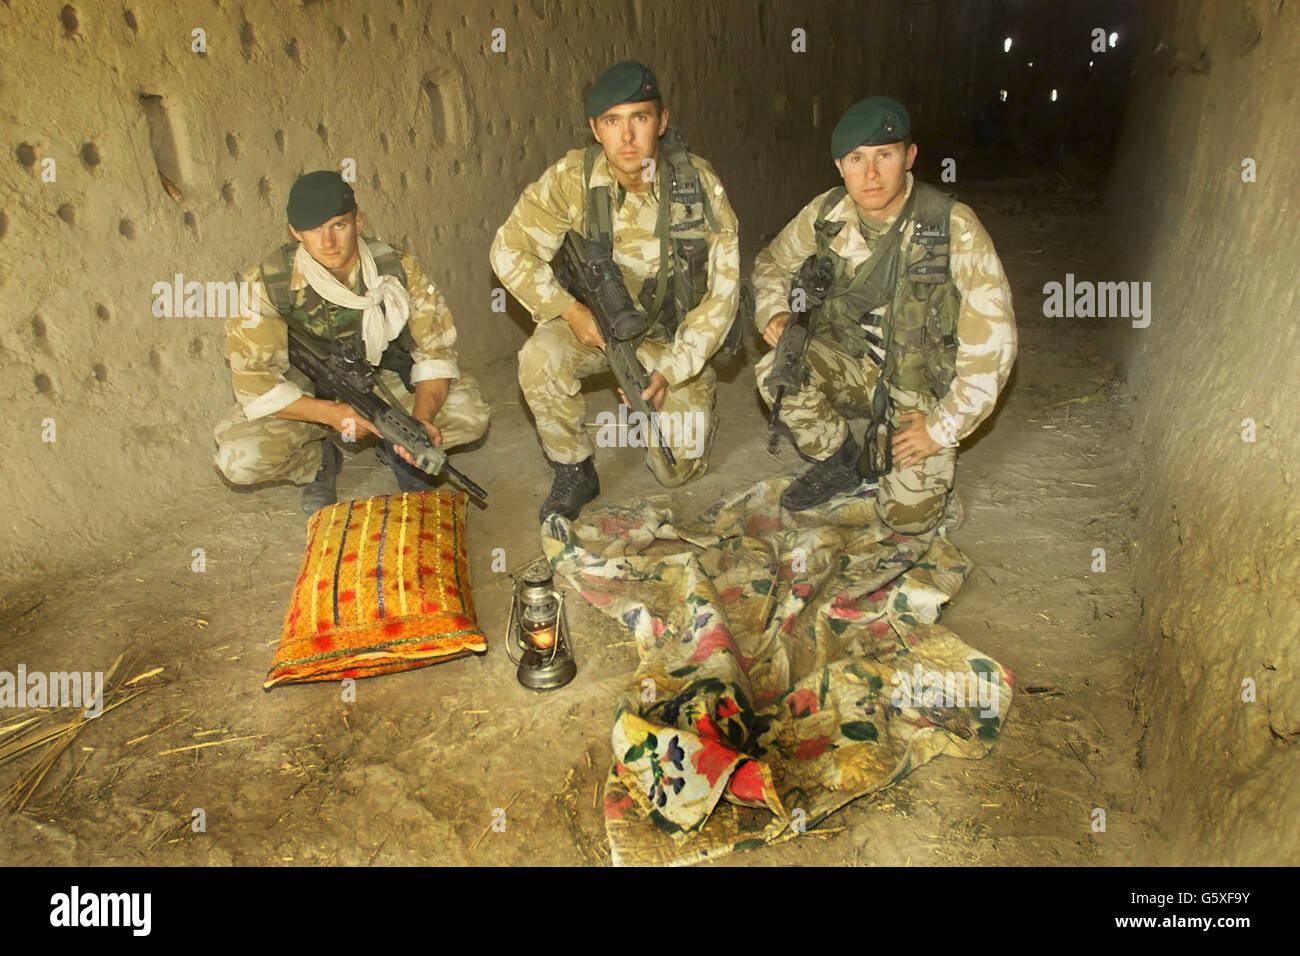 Les soldats britanniques Dean Cubitt (à gauche), le Caporal John Andrews (au centre) et le second Lieutenant David Spink se trouvent dans la grange en briques de boue du village d'Atalay, à 50 milles au nord-ouest de Kandahar, dans le sud de l'Afghanistan. * ... où Royal Marines et les forces spéciales américaines ont découvert une cache d'armes et d'explosifs lors d'un raid jeudi 6 juin 2002. Les troupes ont trouvé des armes, des explosifs en plastique et du matériel de fabrication de bombes, ainsi que des documents de valeur de renseignement qui sont analysés. Les soldats croient qu'une personne qui dormait dans la grange n'a pas de temps avant que les troupes arrivent par hélicoptère comme elles Banque D'Images